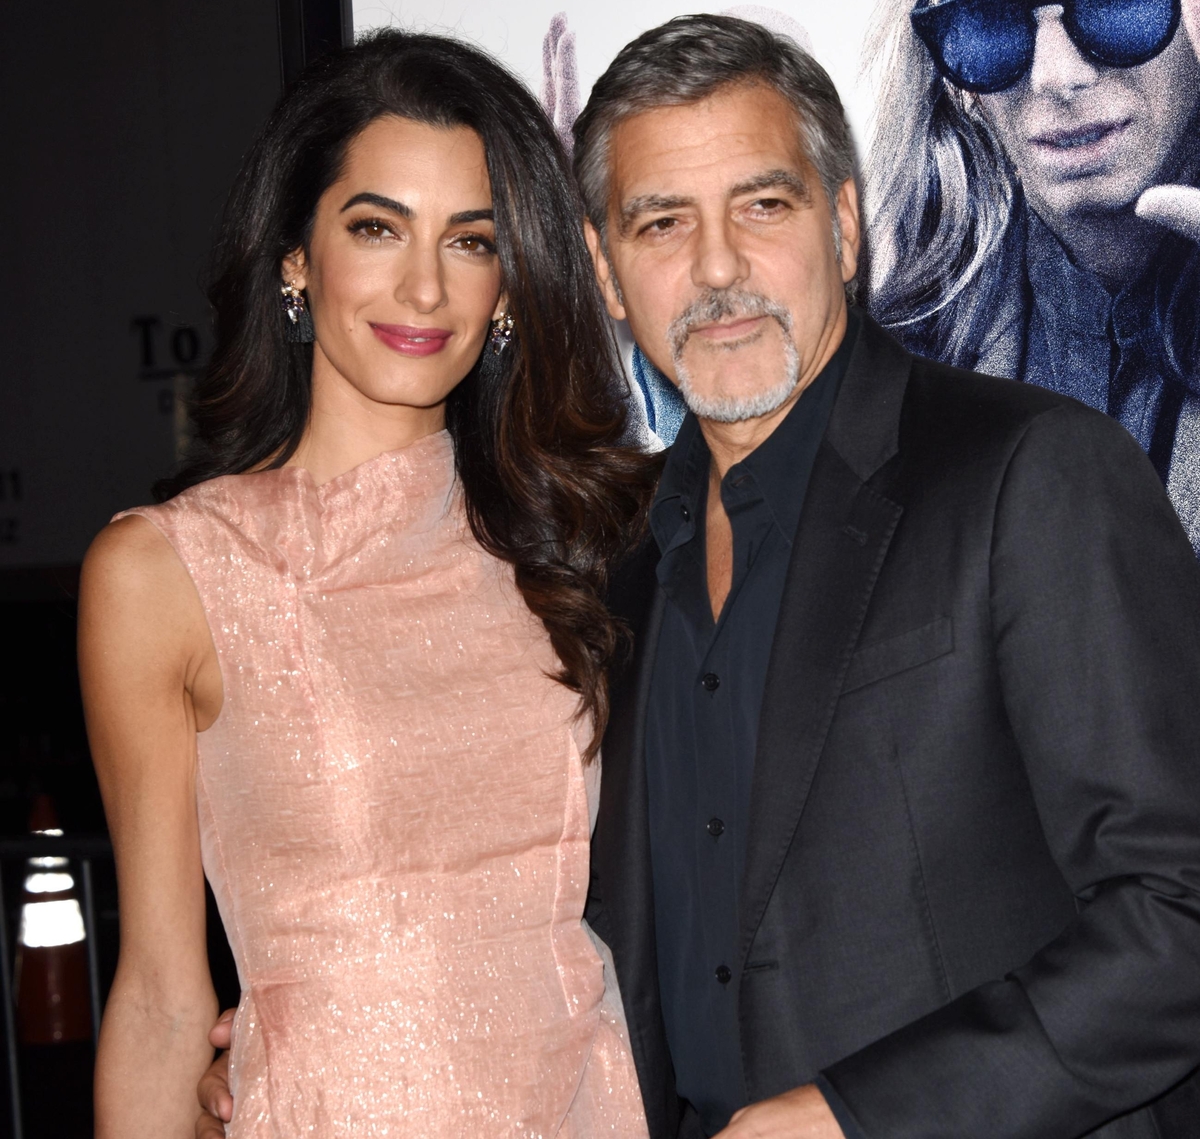 Джордж Клуни посмеялся над слухами о беременности жены